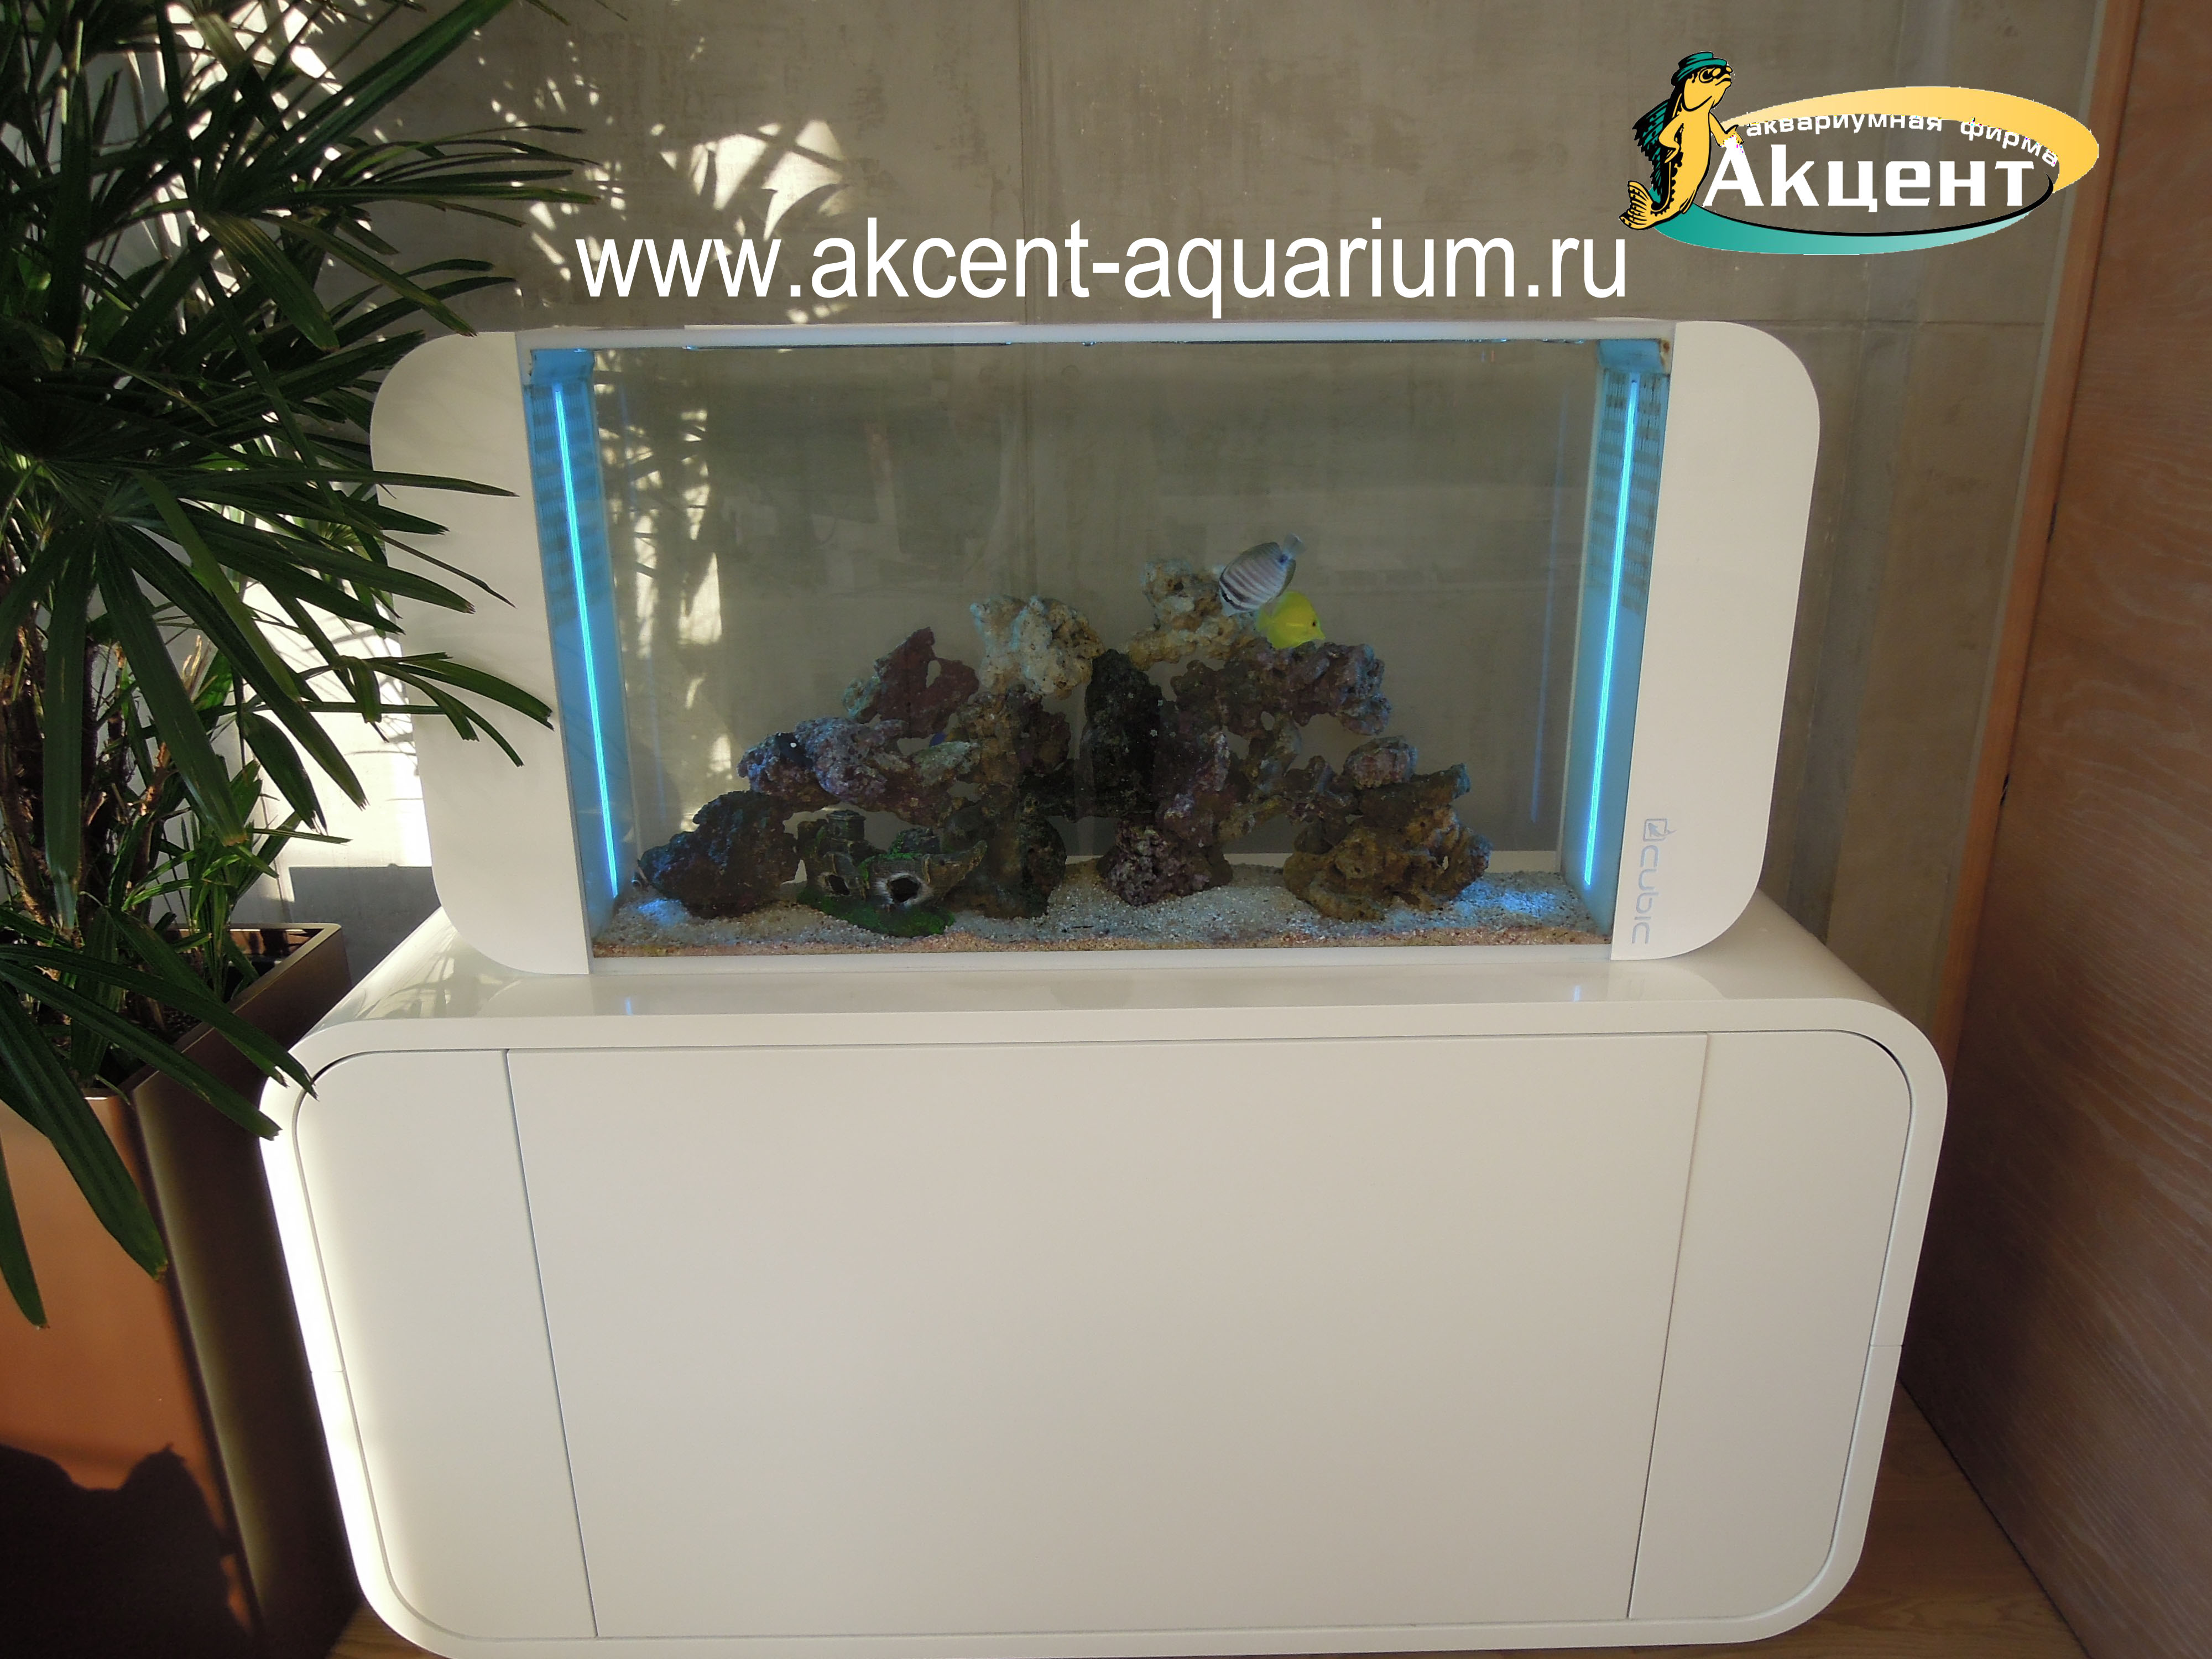 Акцент-аквариум, аквариум морской барабанный 120 литров